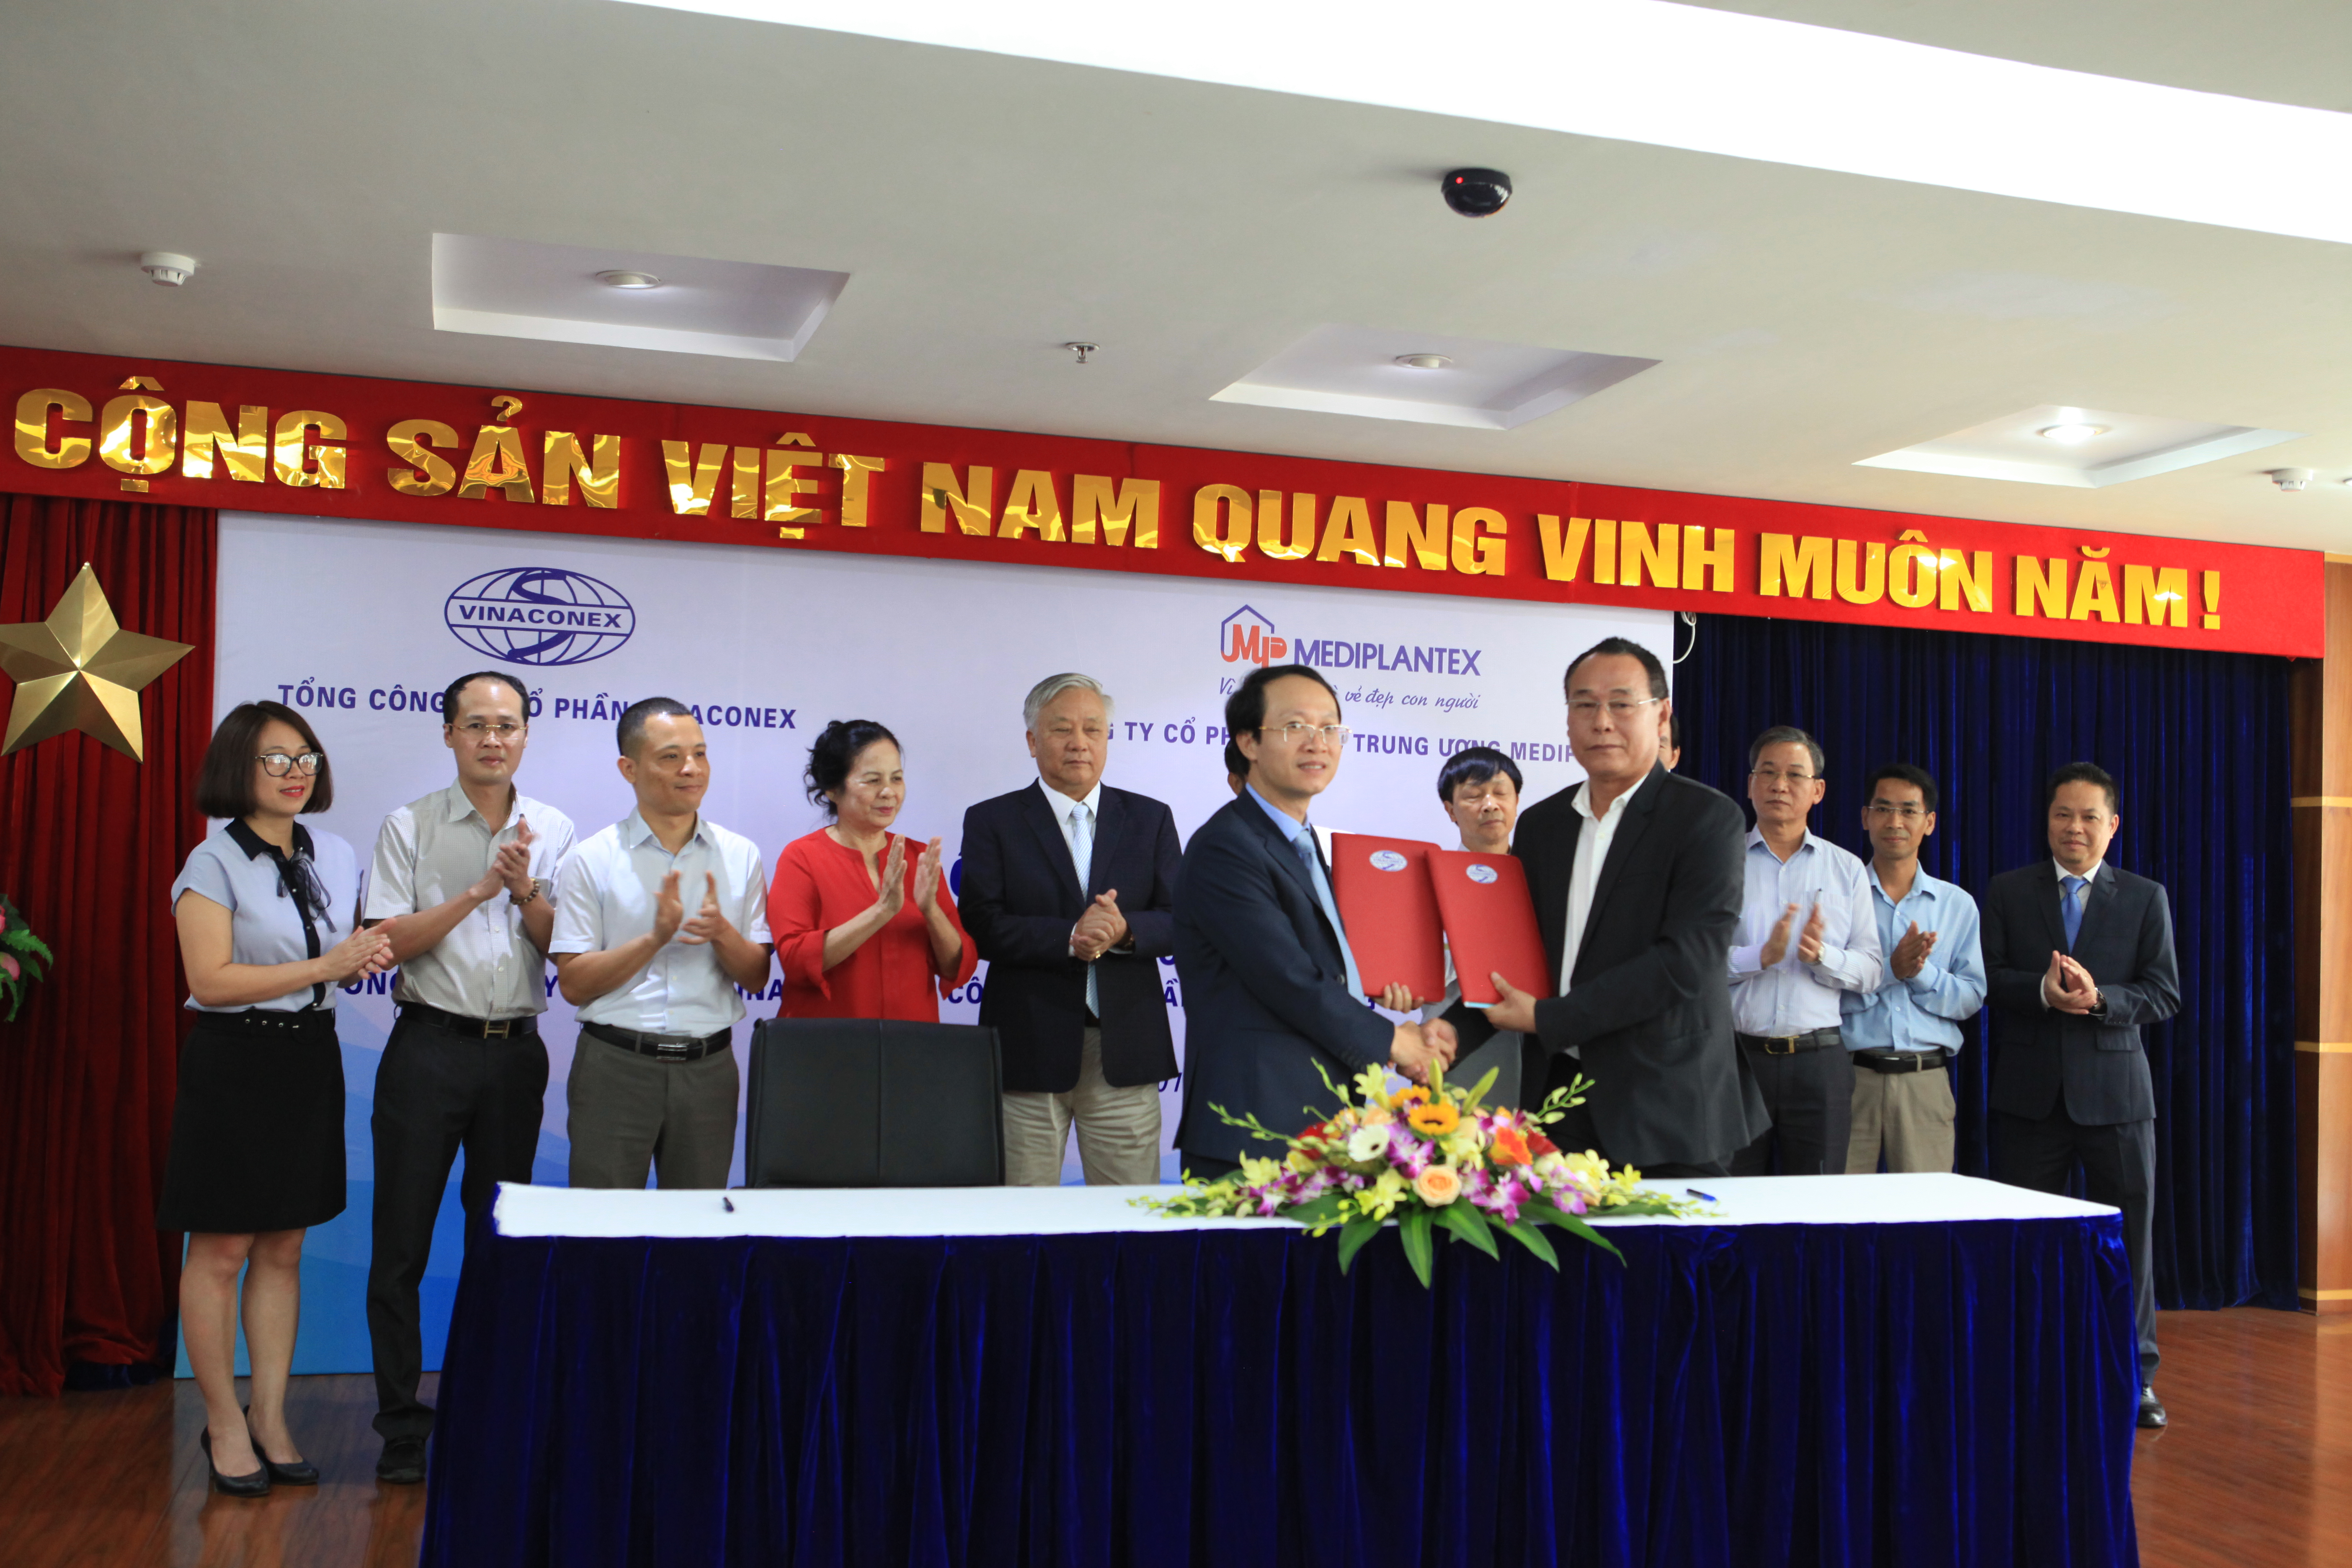 Tổng Giám đốc Nguyễn Xuân Đông: “VINACONEX  chào đón Nhà đầu tư mới đến Khu Công nghiệp Công nghệ cao 2”